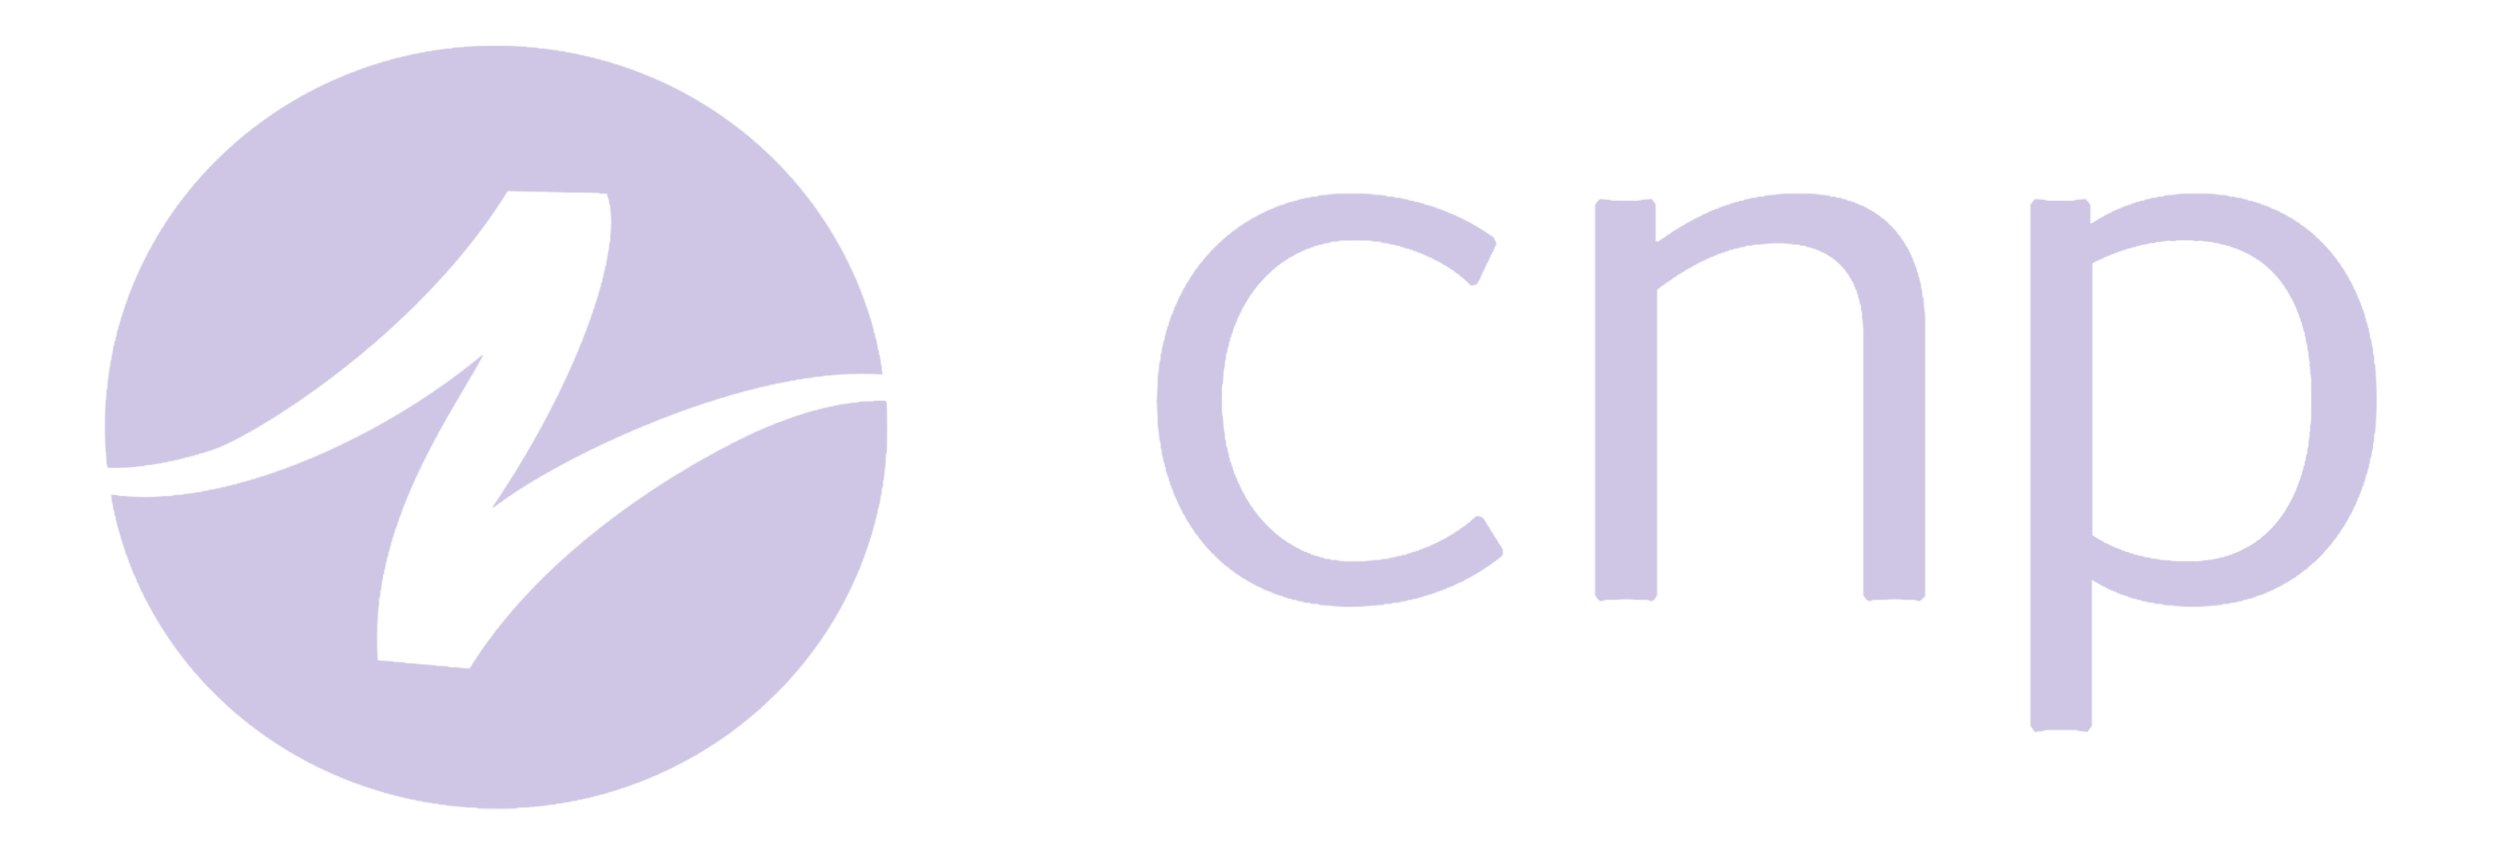 cnp-logo.png